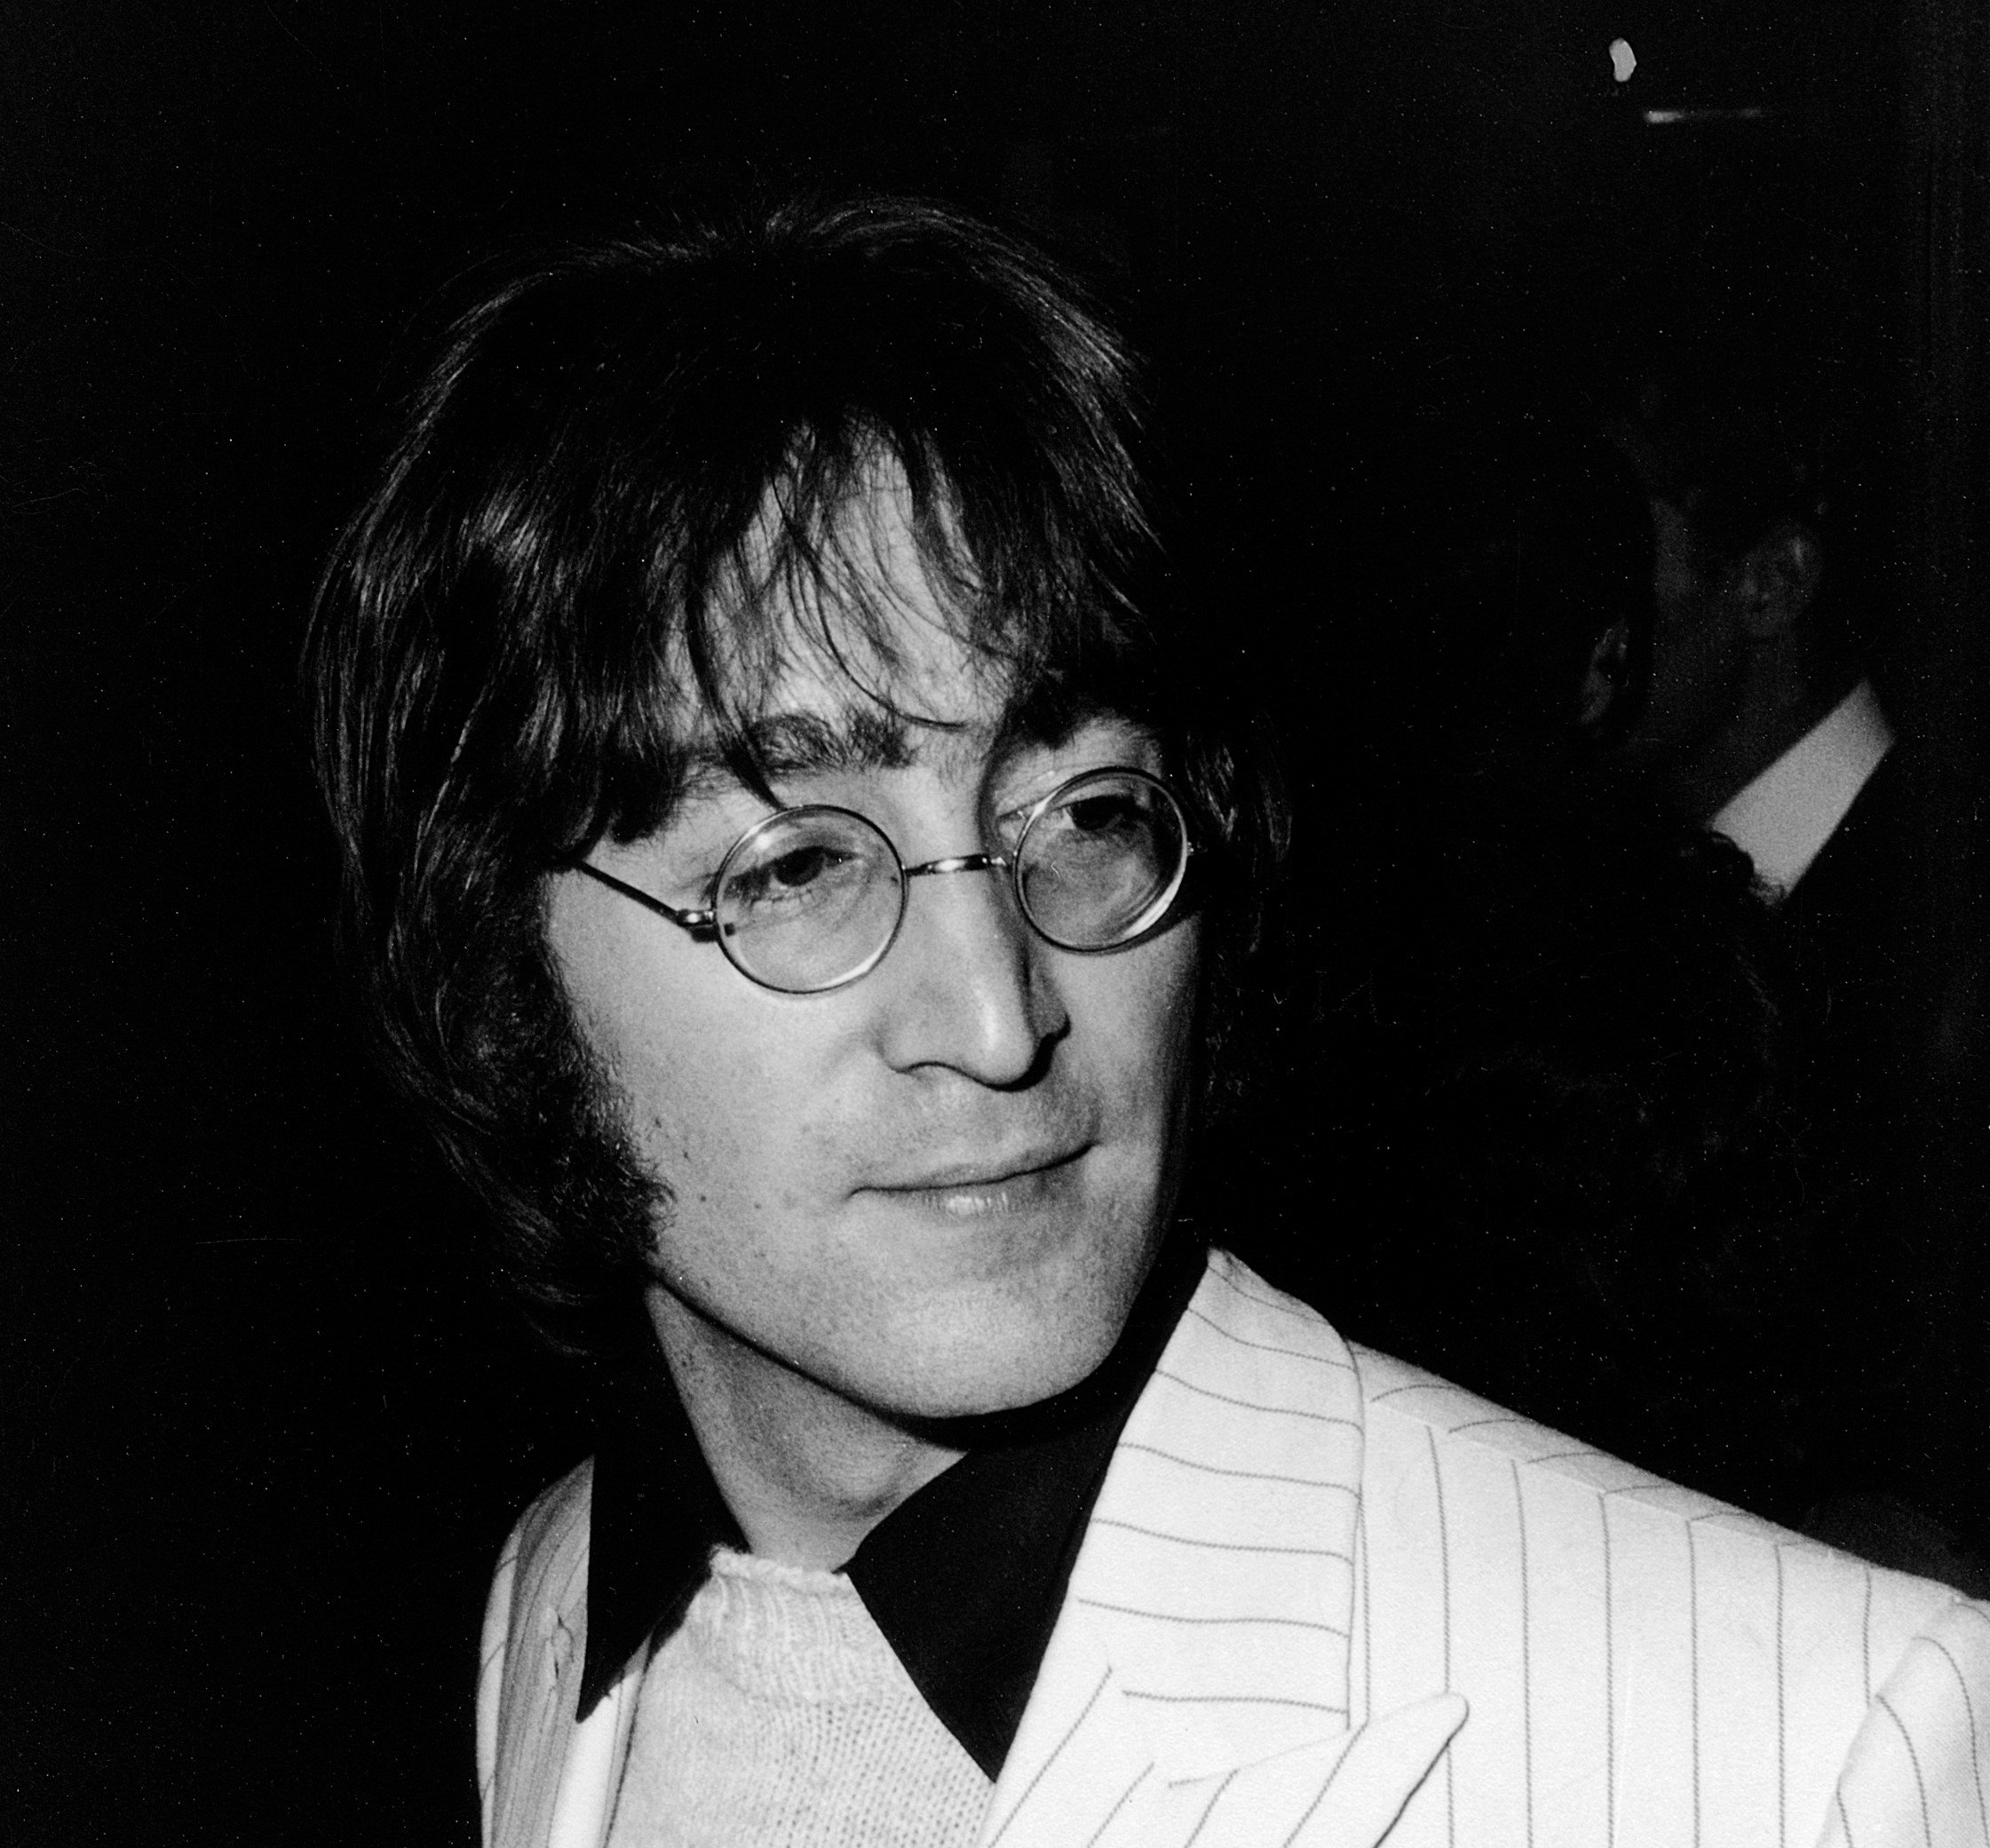 John Lennon in a suit